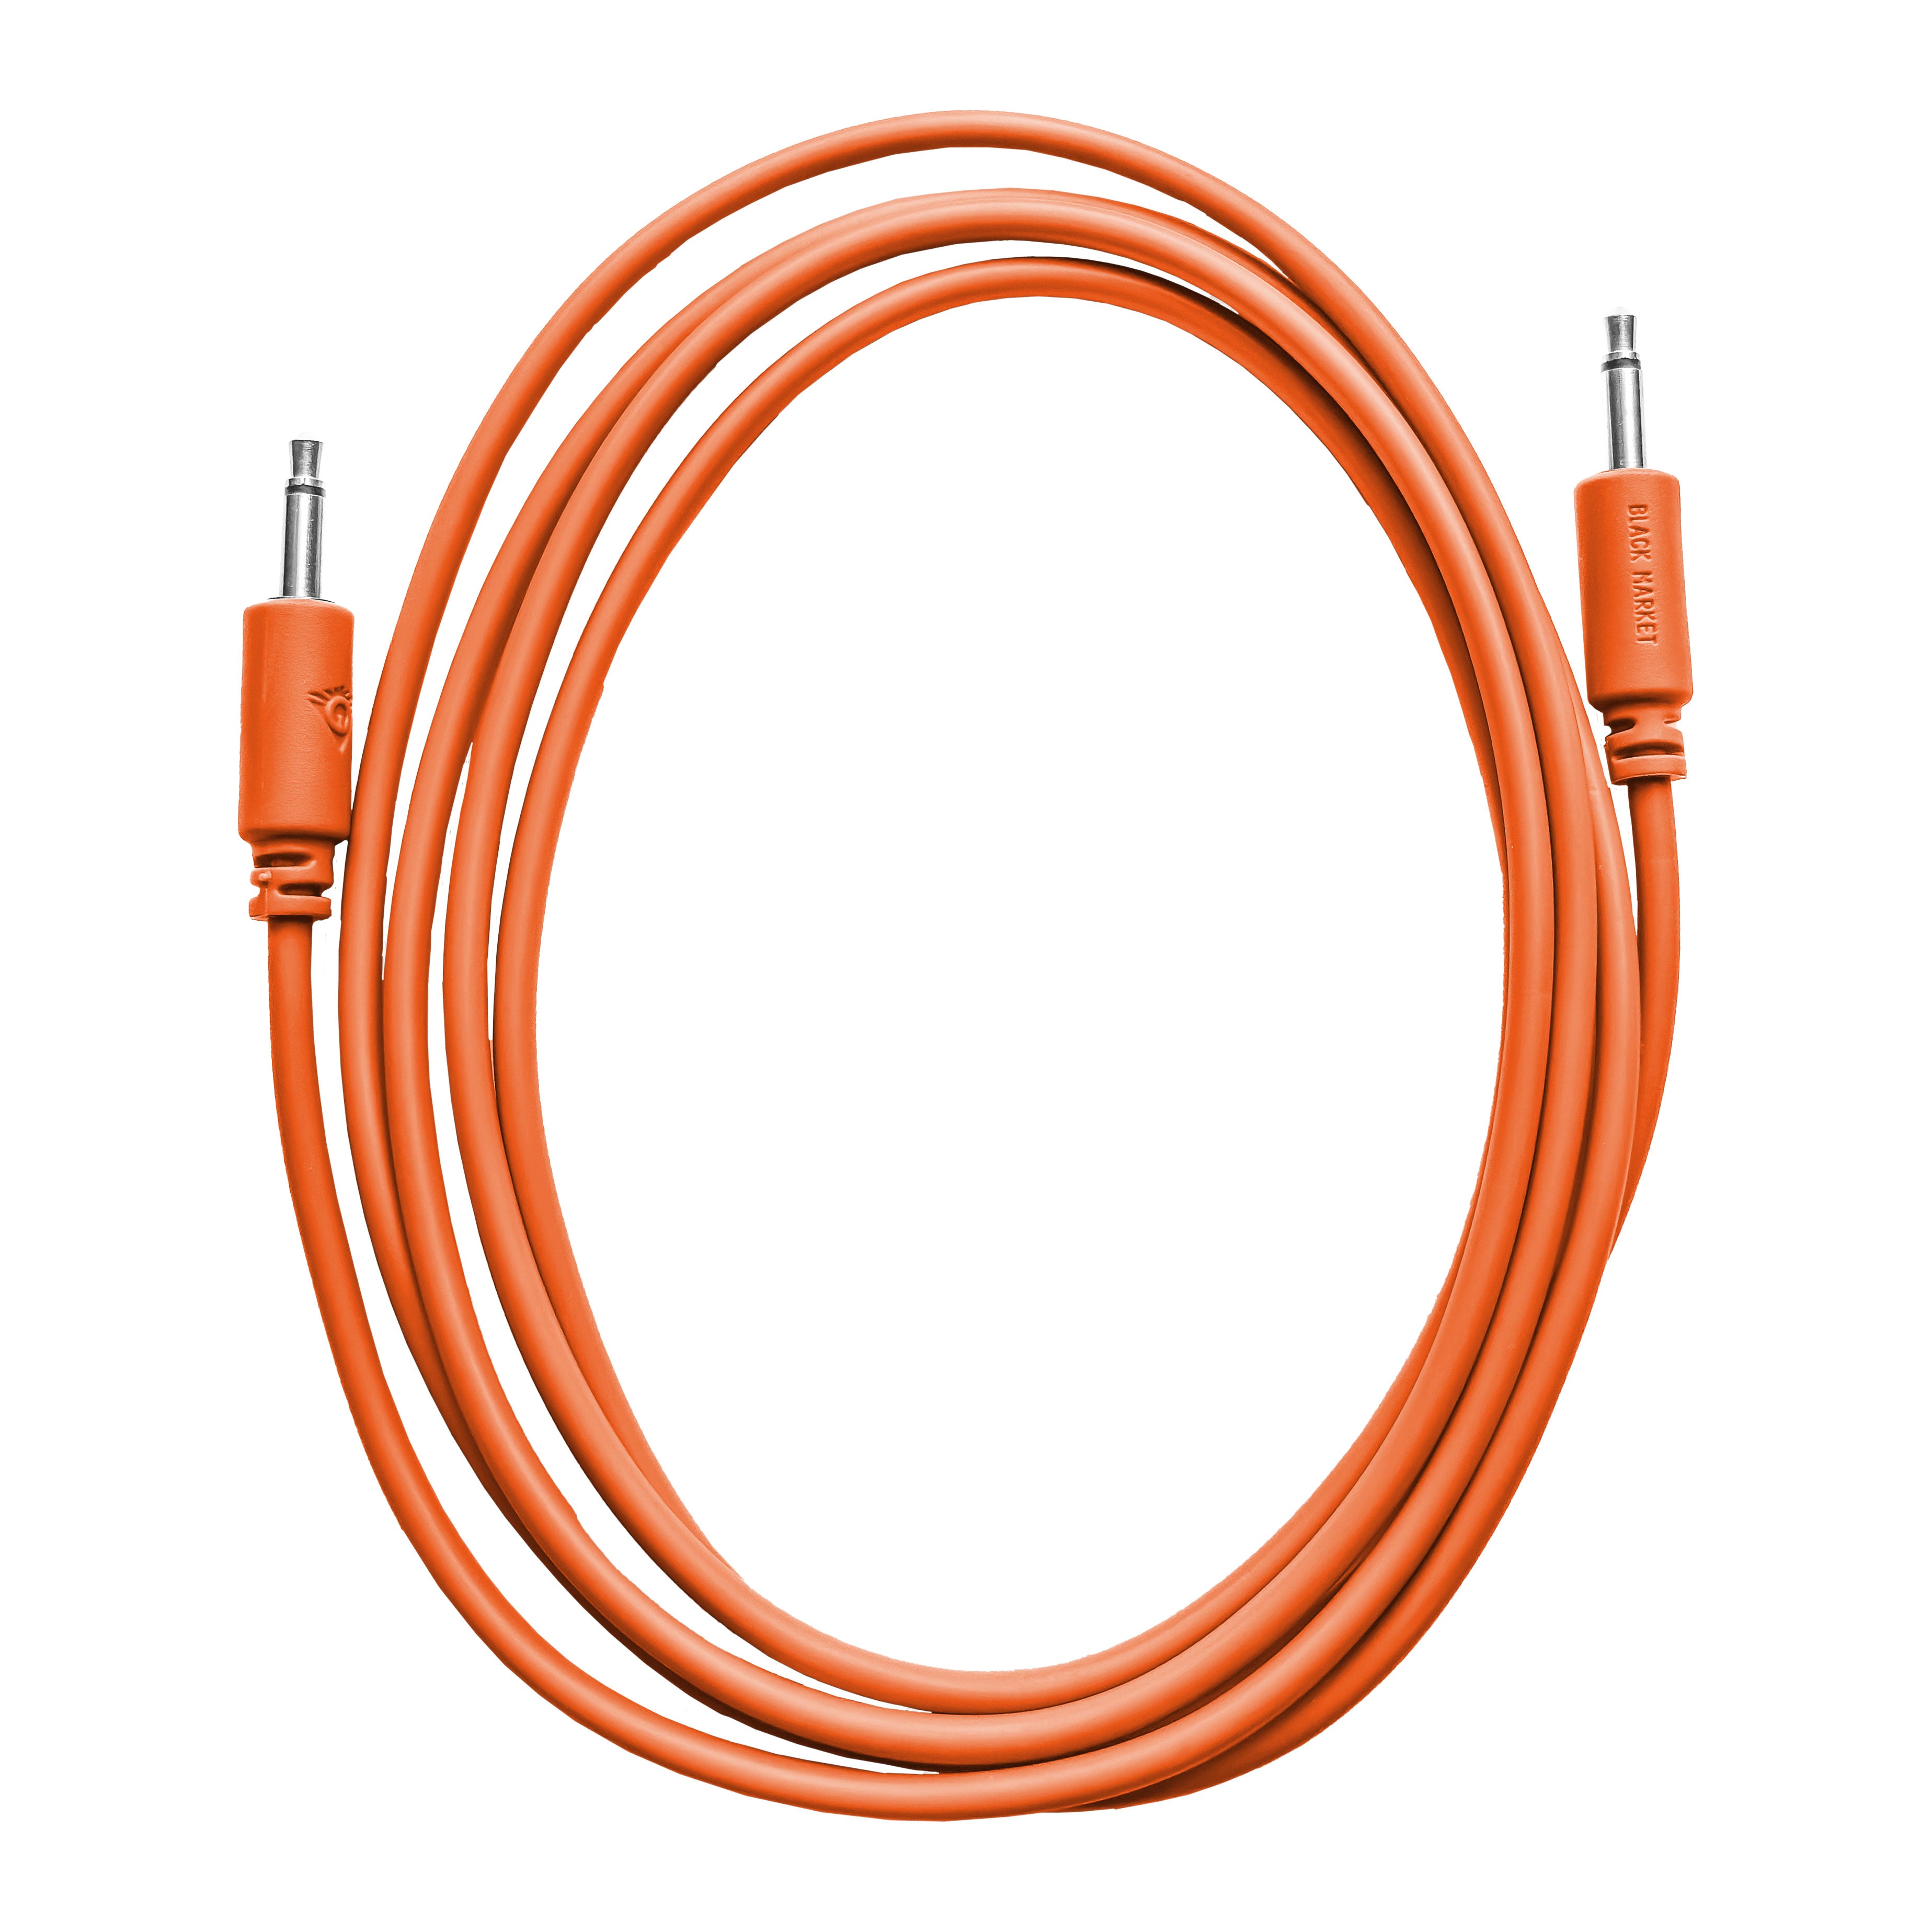 Black Market Modular 3.5mm Patch Cable - 100cm/40" - Orange View 1